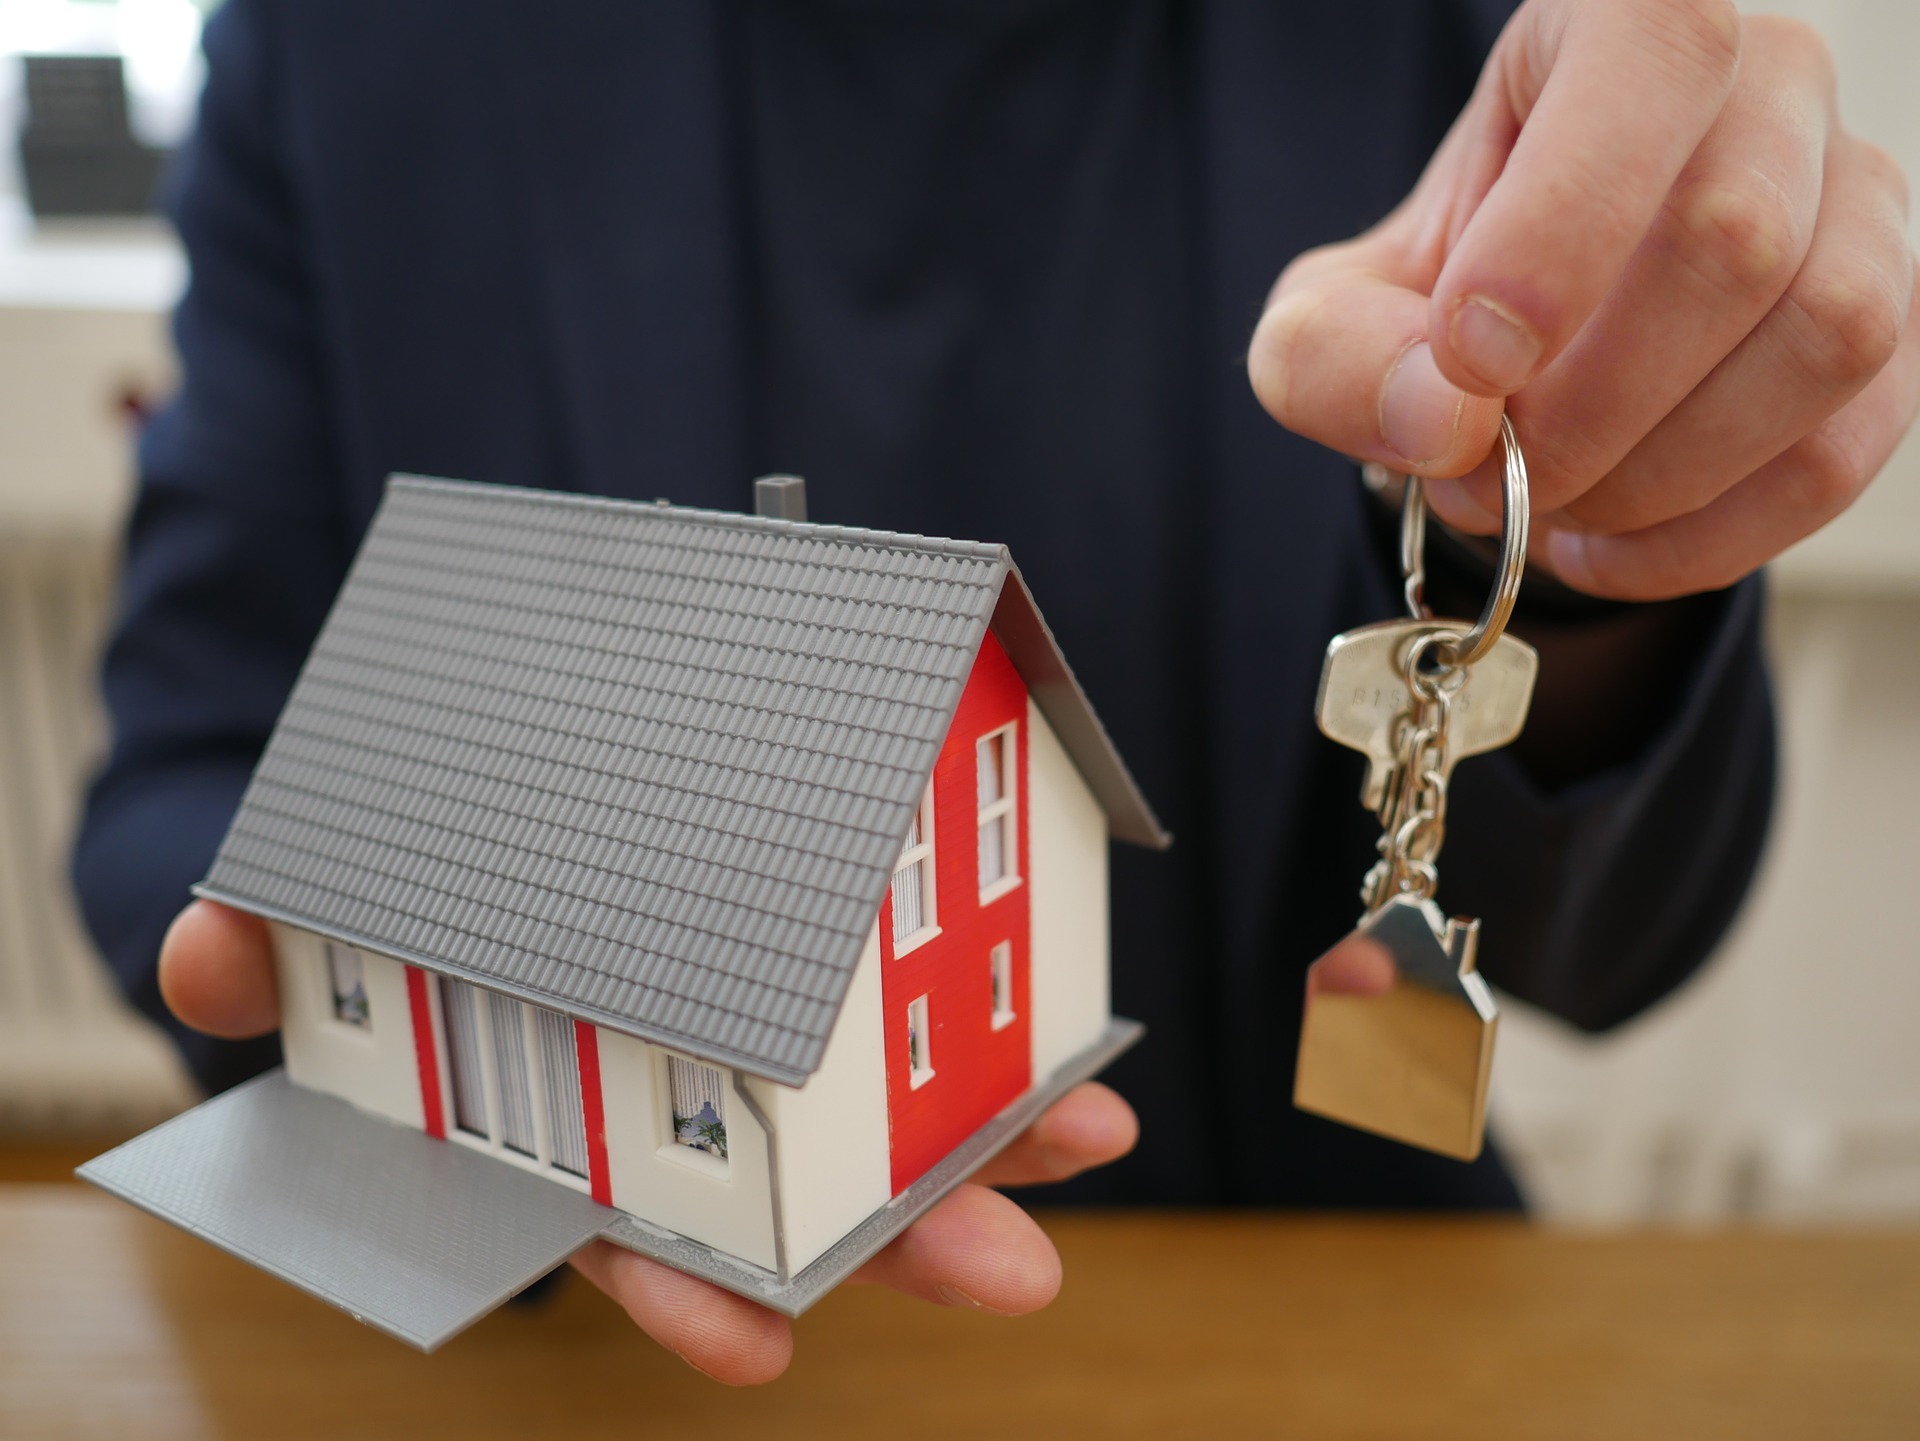 Les biens immobiliers confisqués peuvent être mis à disposition des associations et fondations ©DR